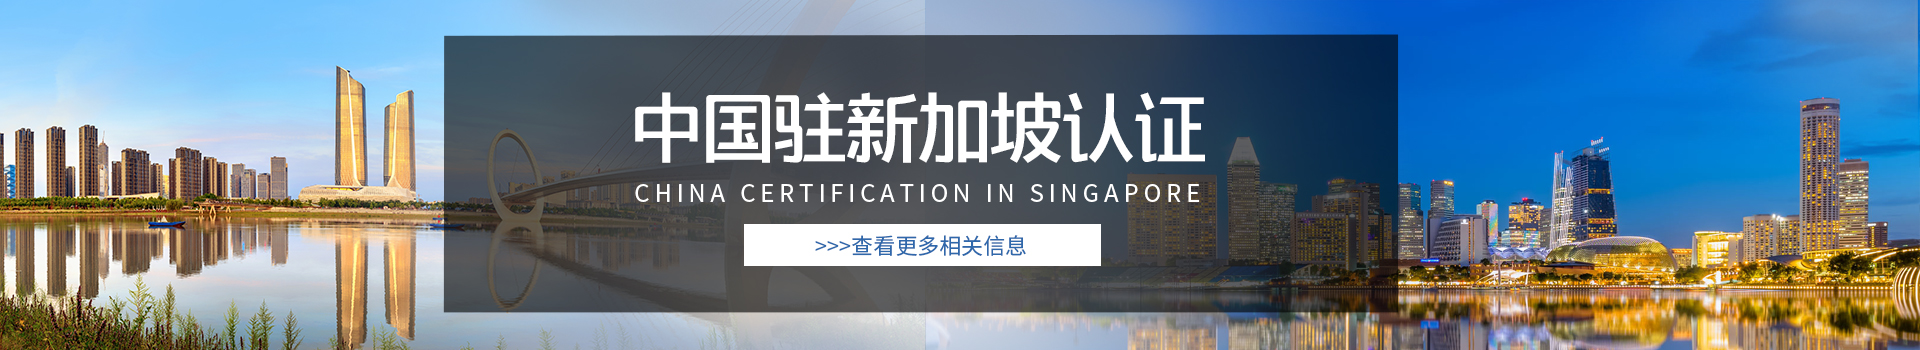 中国驻新加坡认证